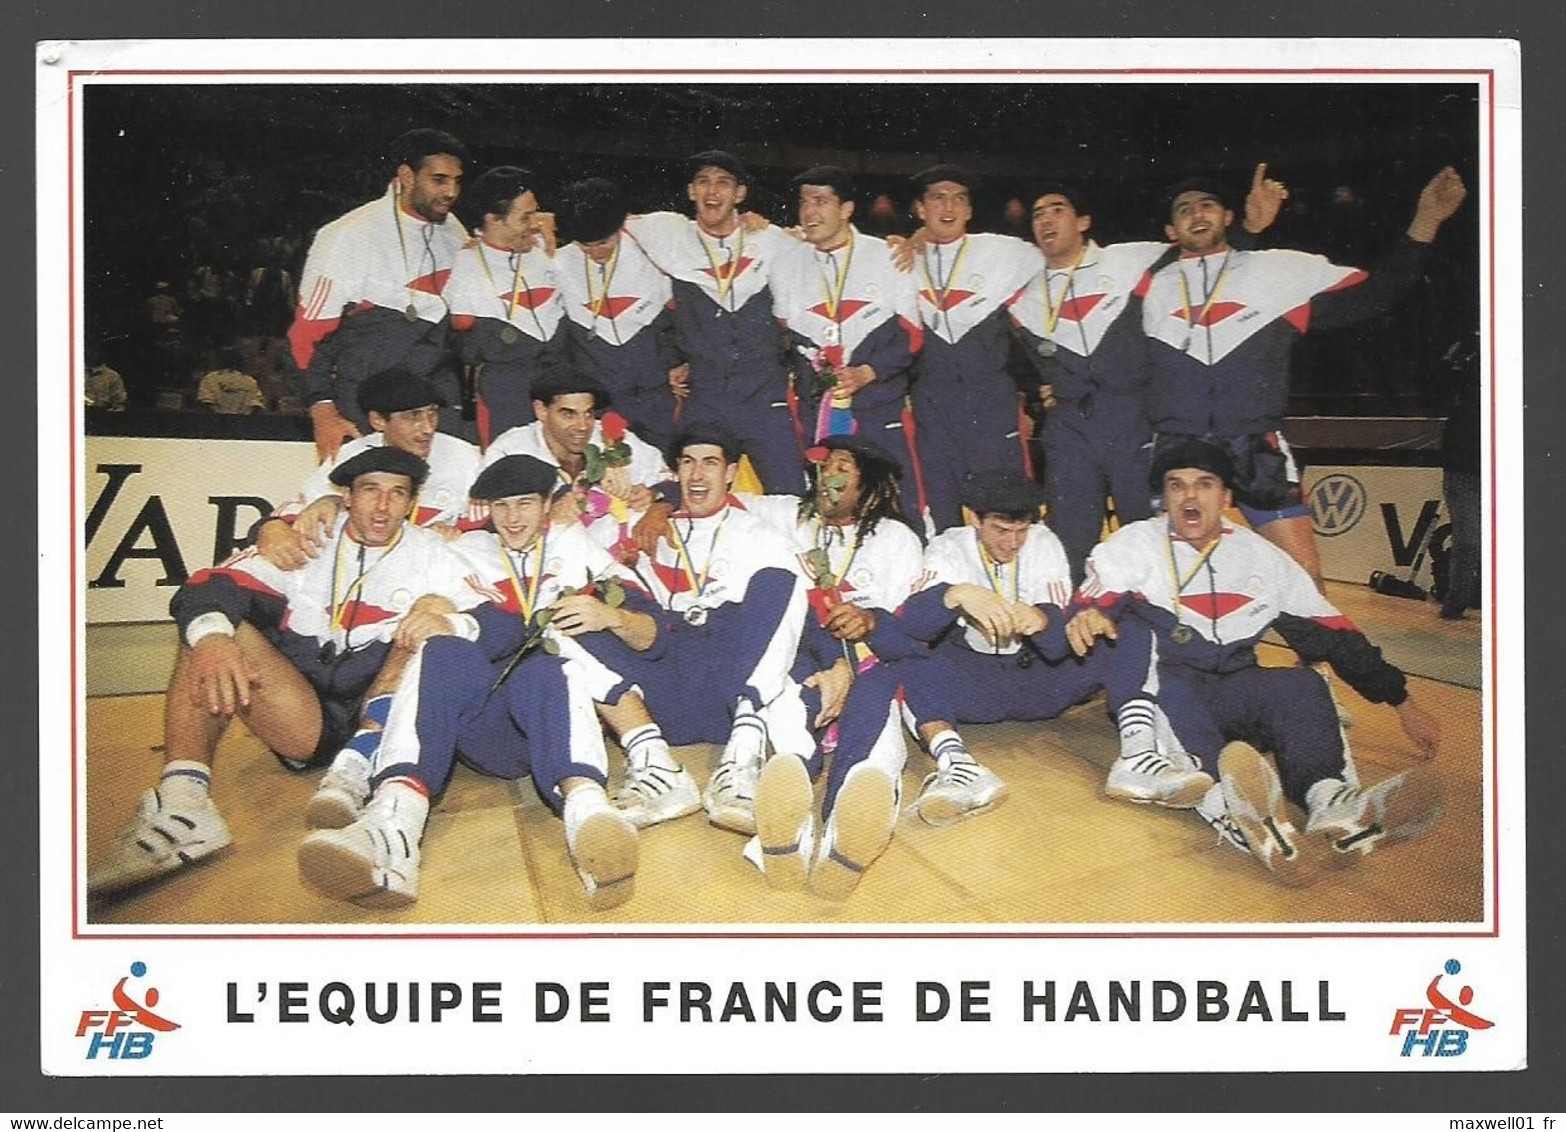 I6 - Equipe De France De Handball 1993 FFHB - Handbal